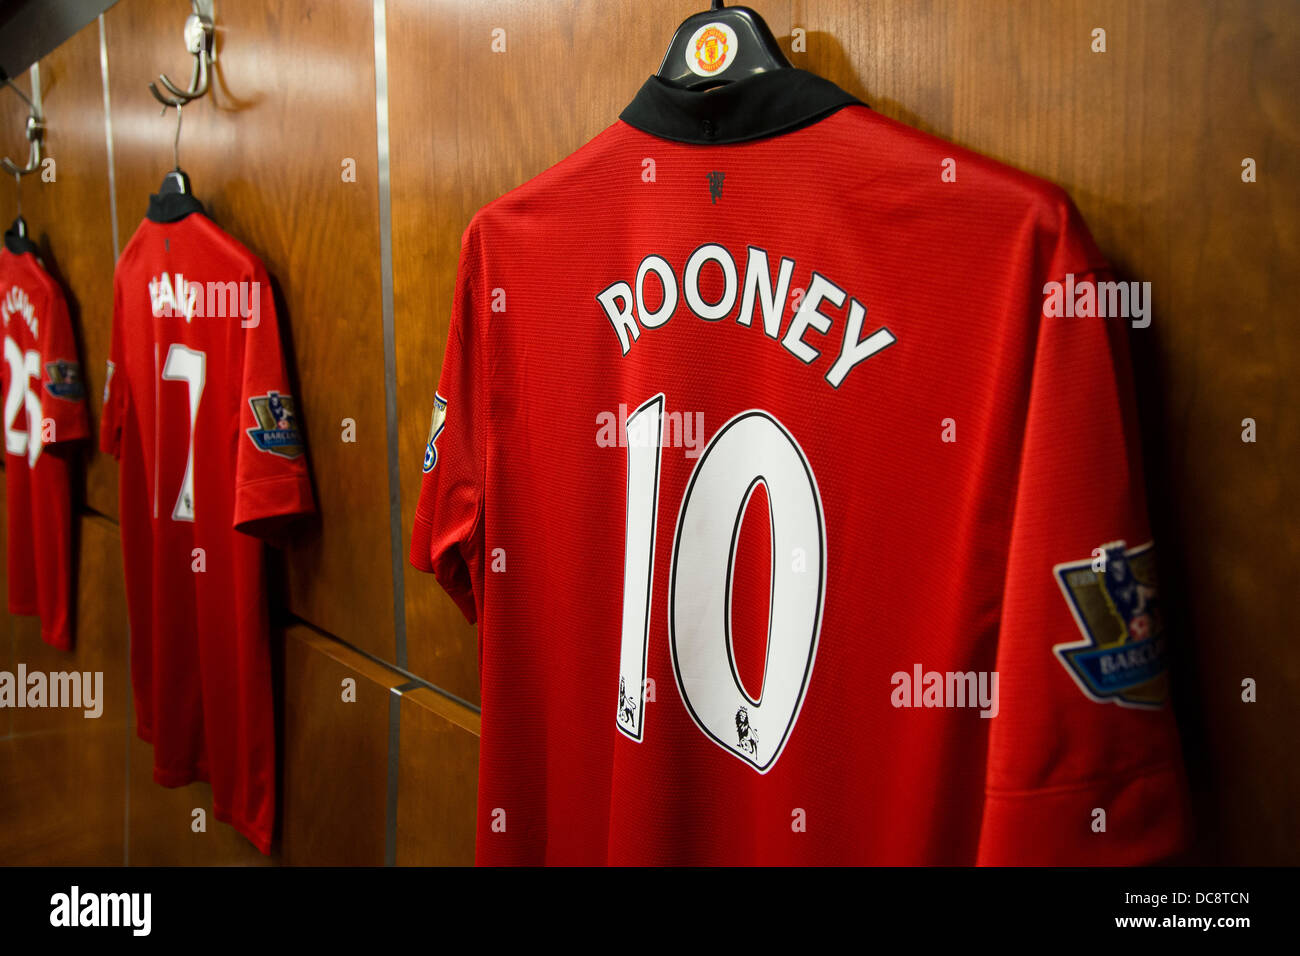 Rooneys Fußballtrikot von Manchester United in der old Trafford nach Hause Garderobe hängen Stockfoto